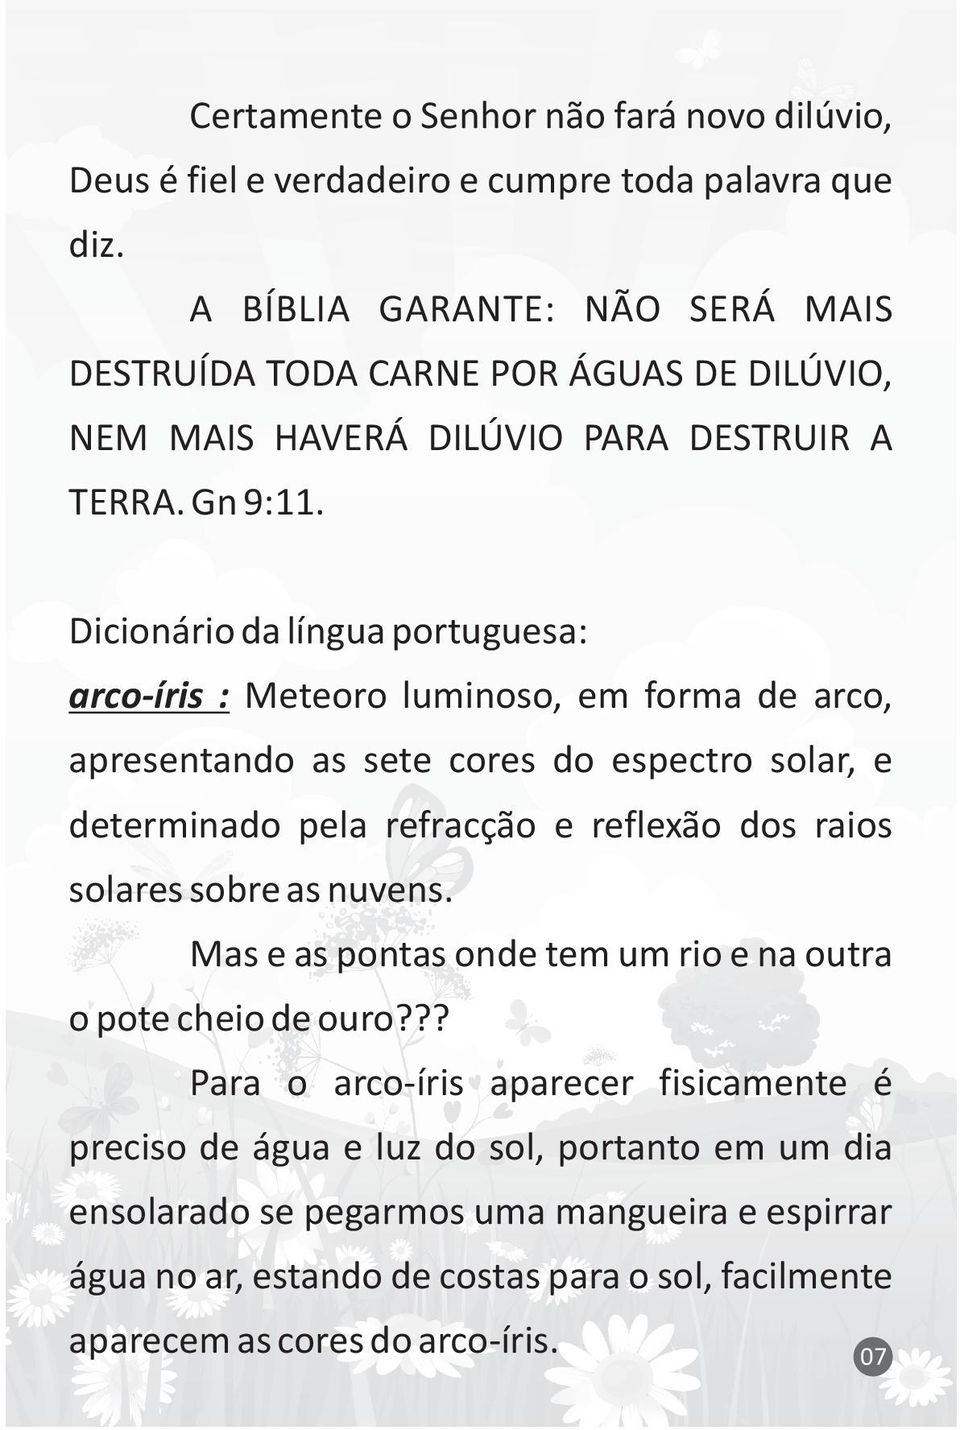 Dicionário da língua portuguesa: arco-íris : Meteoro luminoso, em forma de arco, apresentando as sete cores do espectro solar, e determinado pela refracção e reflexão dos raios